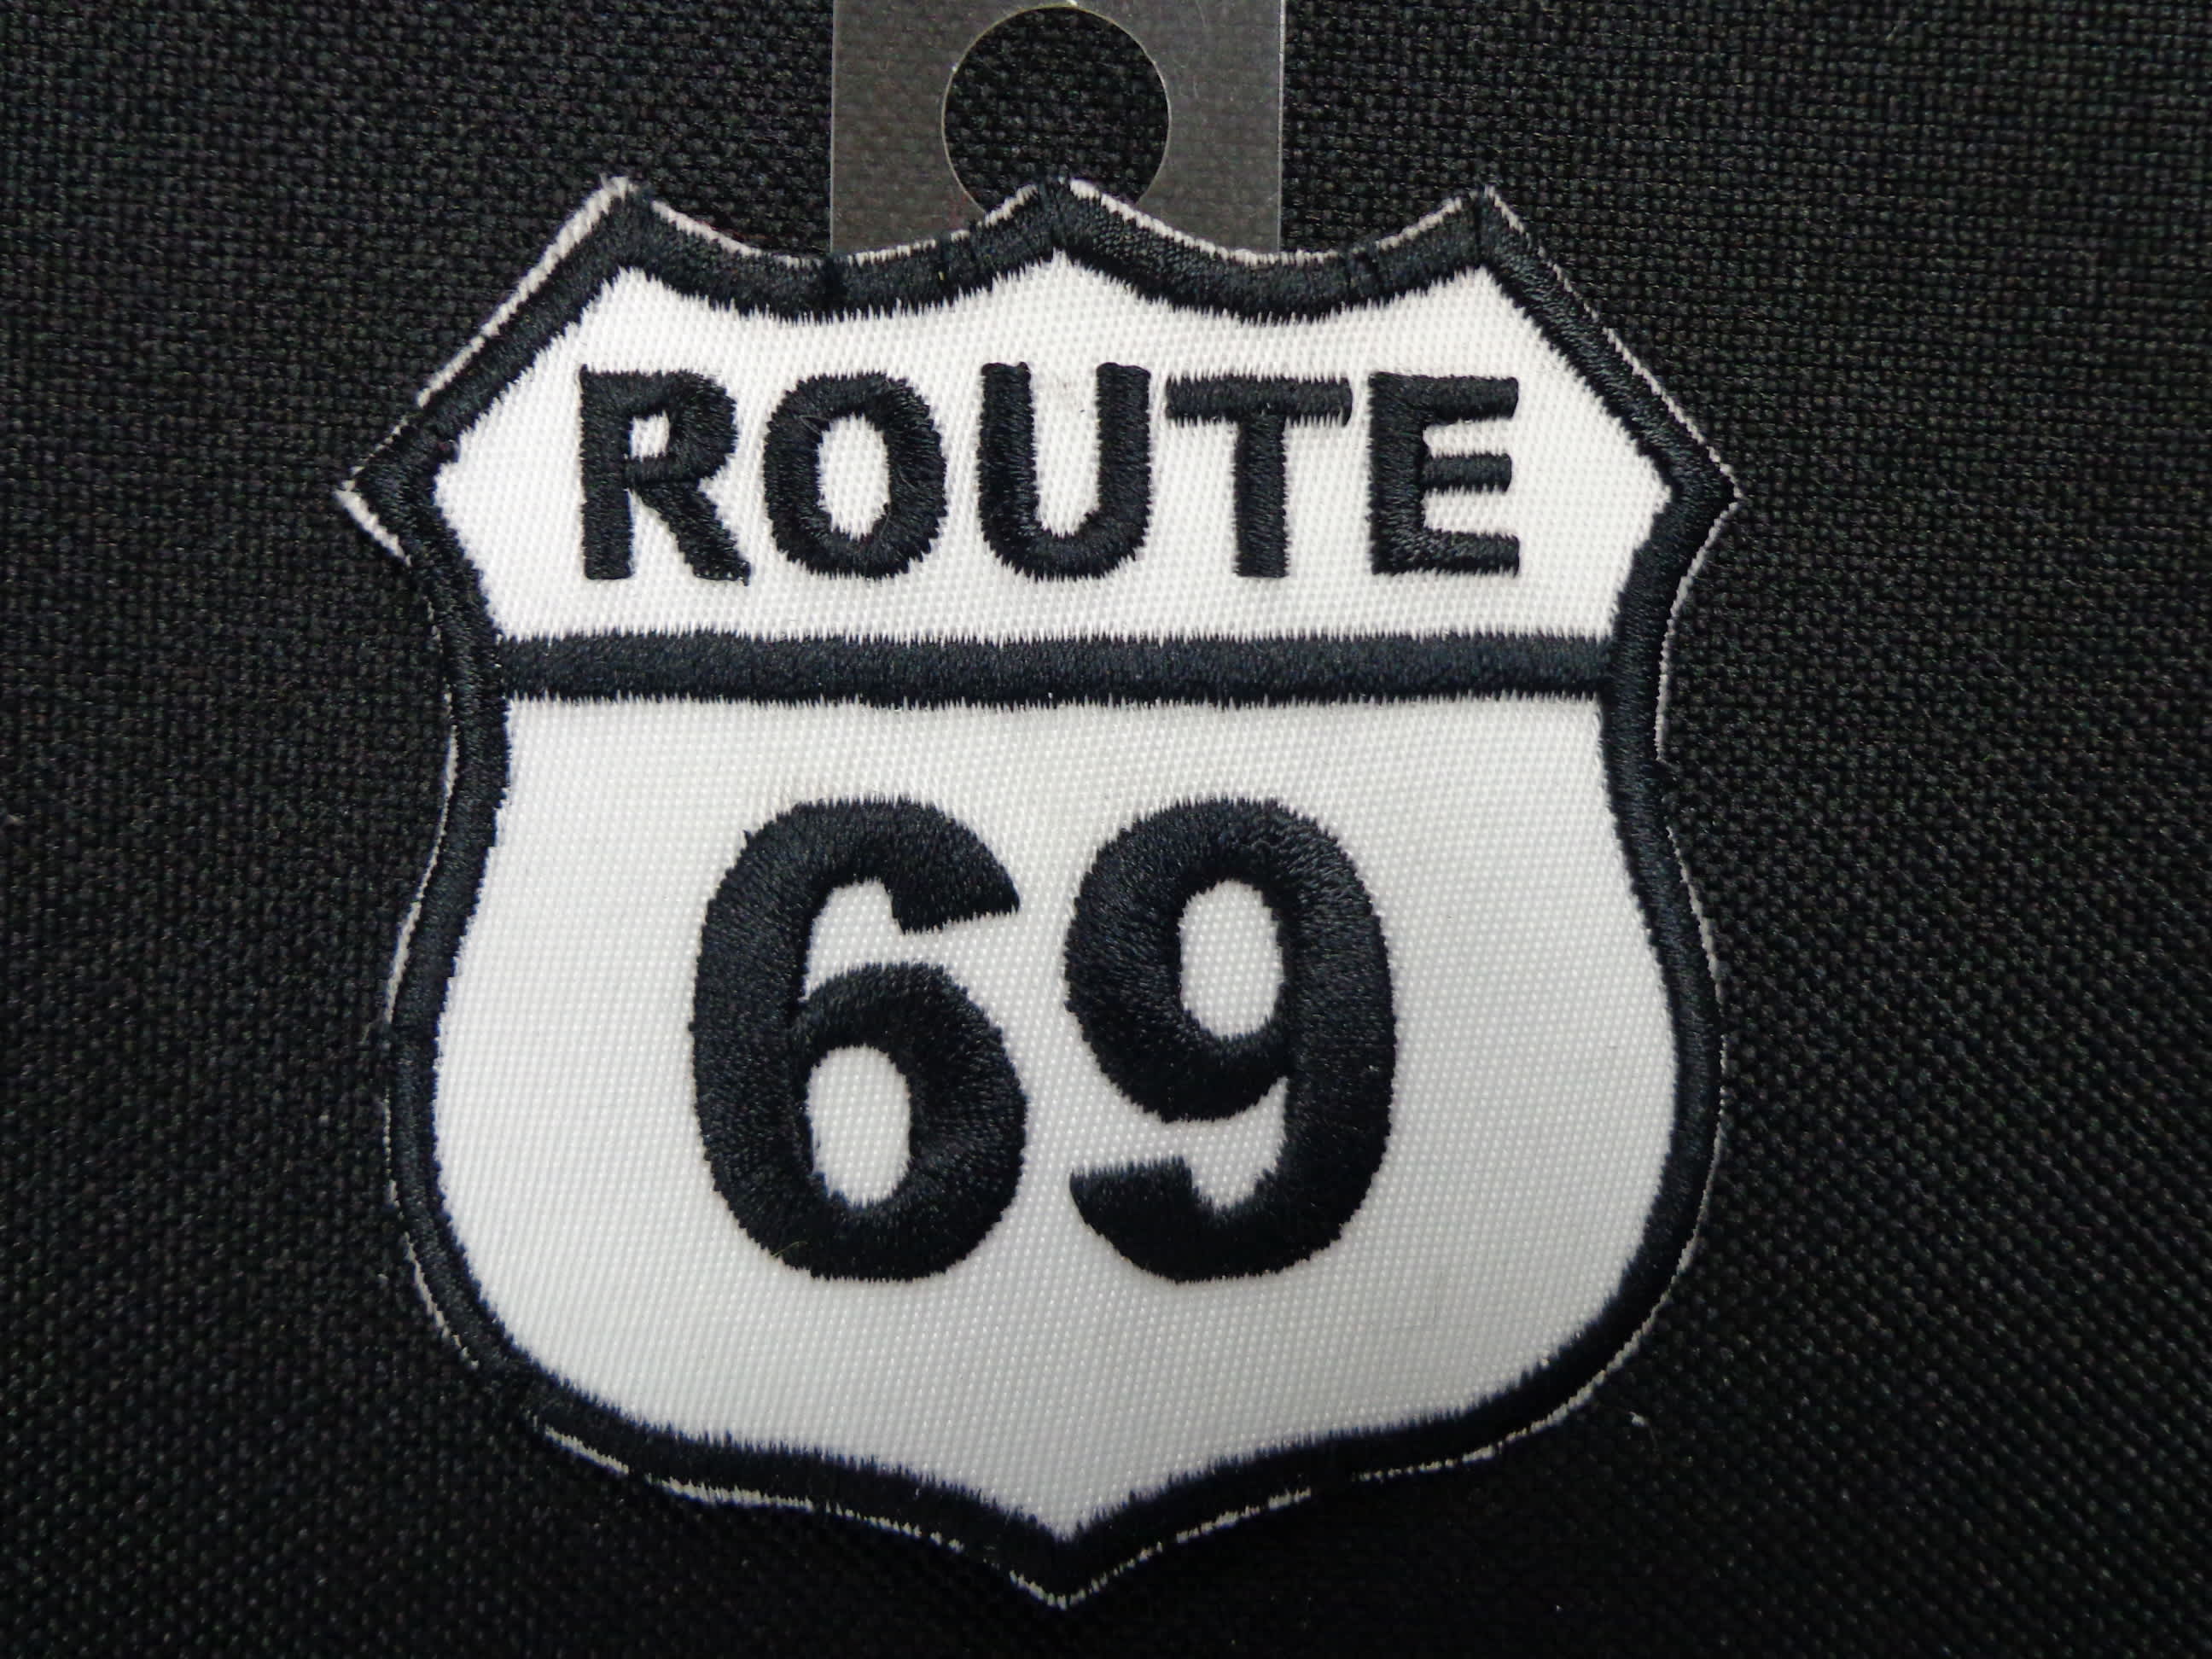 ROUTE 69 - Arizona Biker Leathers LLC.